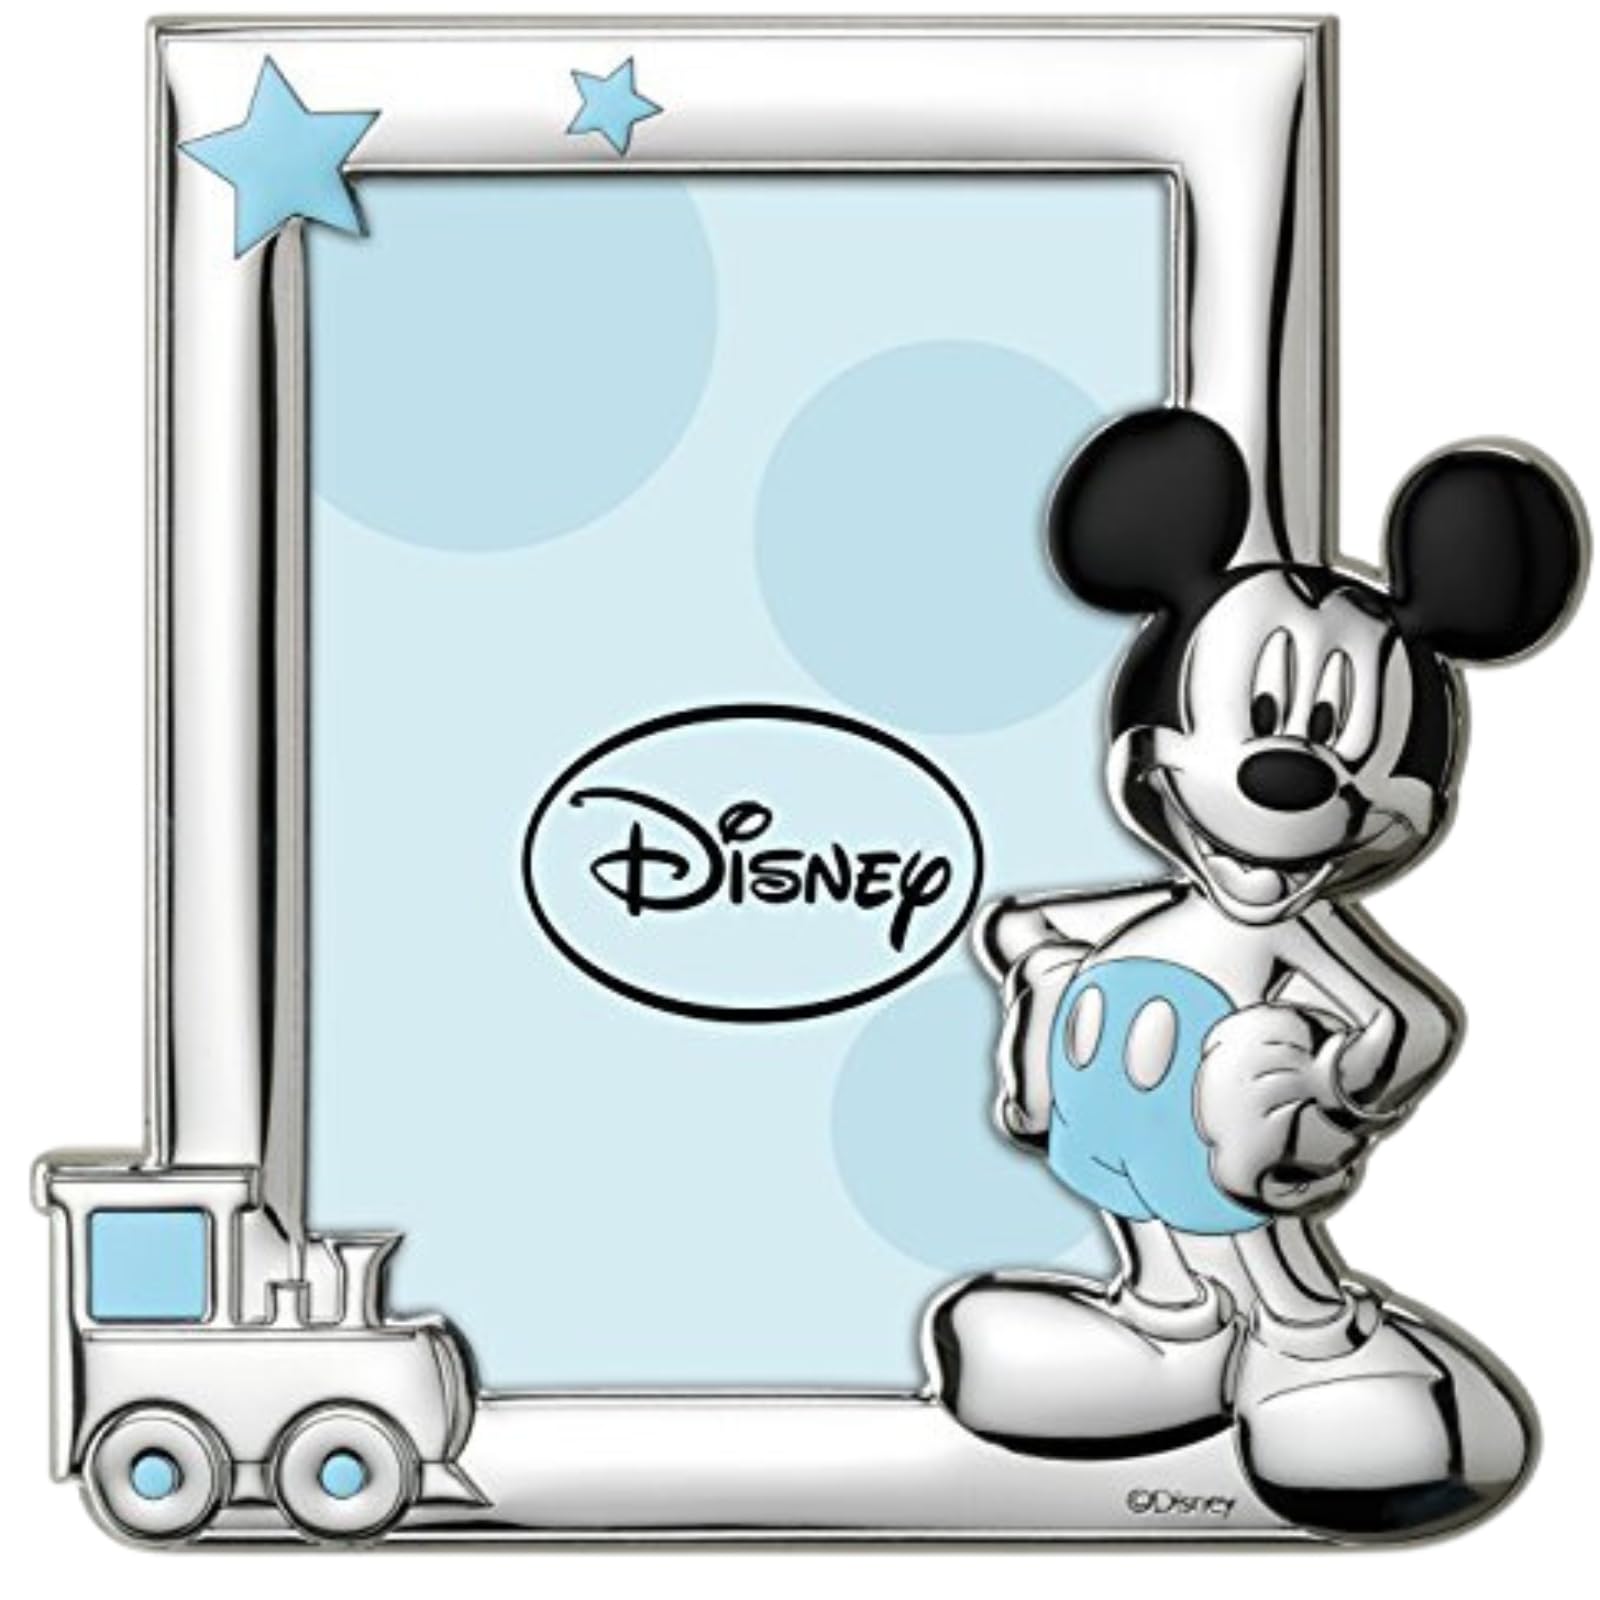 Disney Baby - Bilderrahmen zum Hinstellen - Silber - ideal für den Nachttisch im Kinderzimmer - perfekt als Geschenkidee zur Taufe oder zum Geburtstag - Micky-Maus-Design